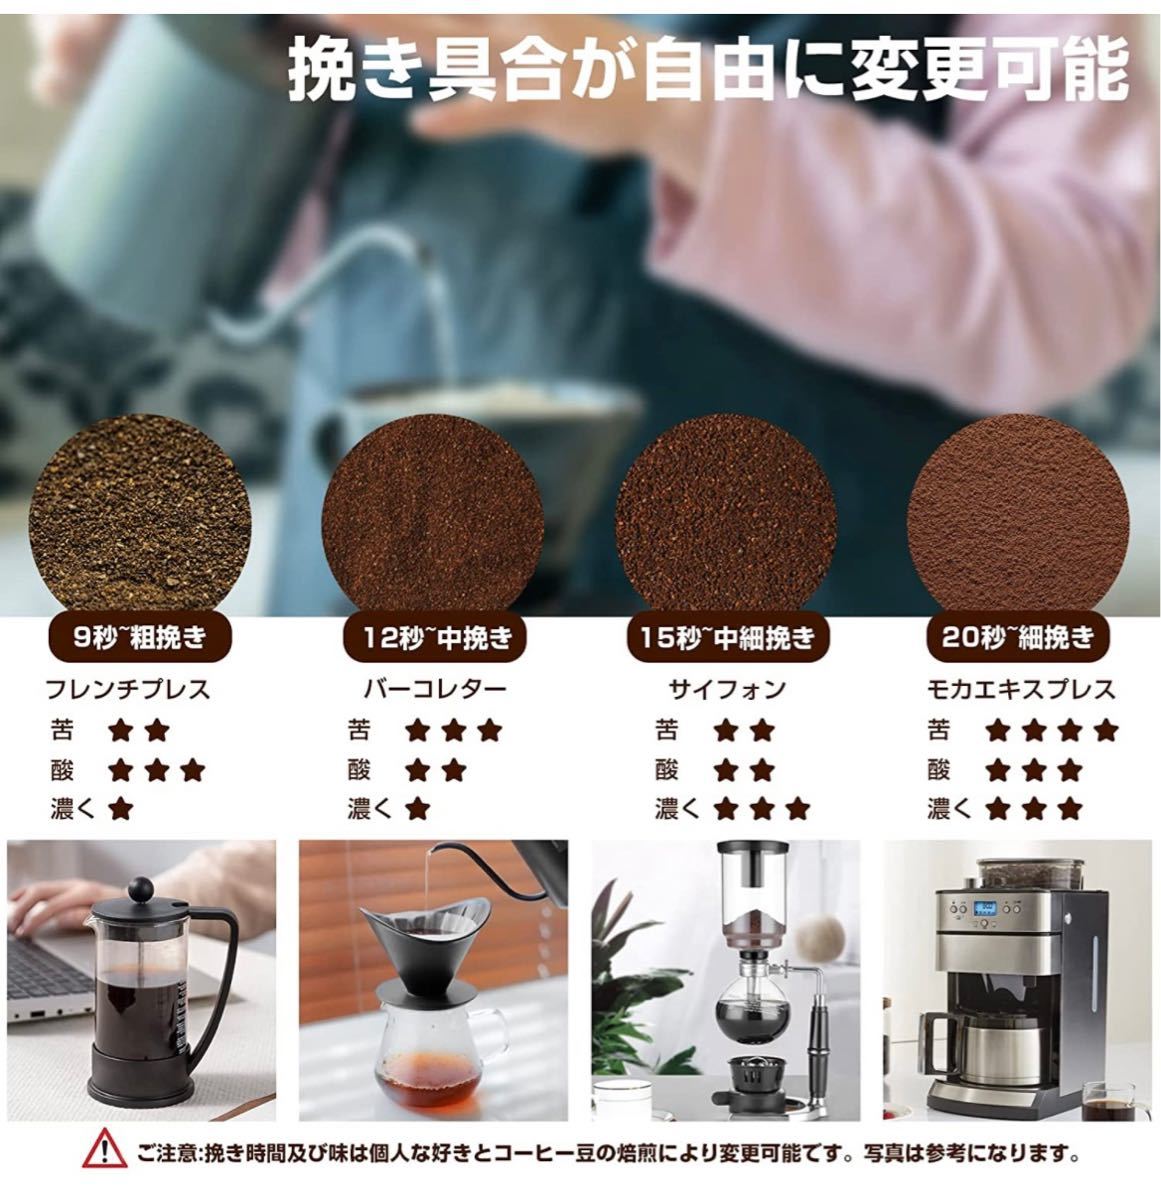 電動コーヒーミル コーヒー豆/調味料/穀物/茶/スパイス等を挽き可能 粒度調整